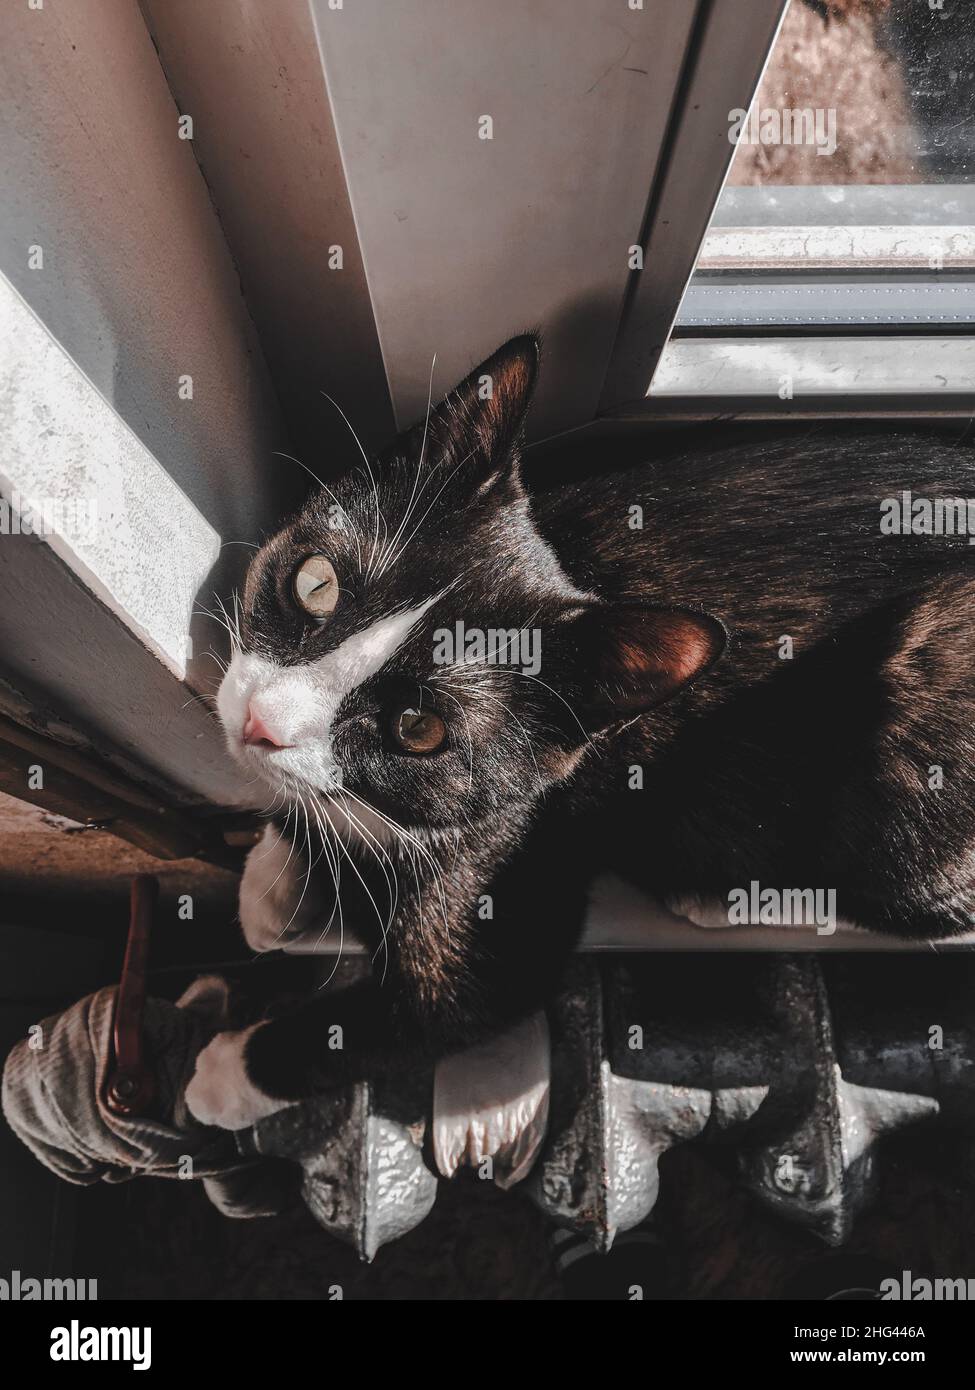 Un gatto nero con una museruola bianca si trova sul davanzale accanto ai radiatori e riscalda le zampe Foto Stock